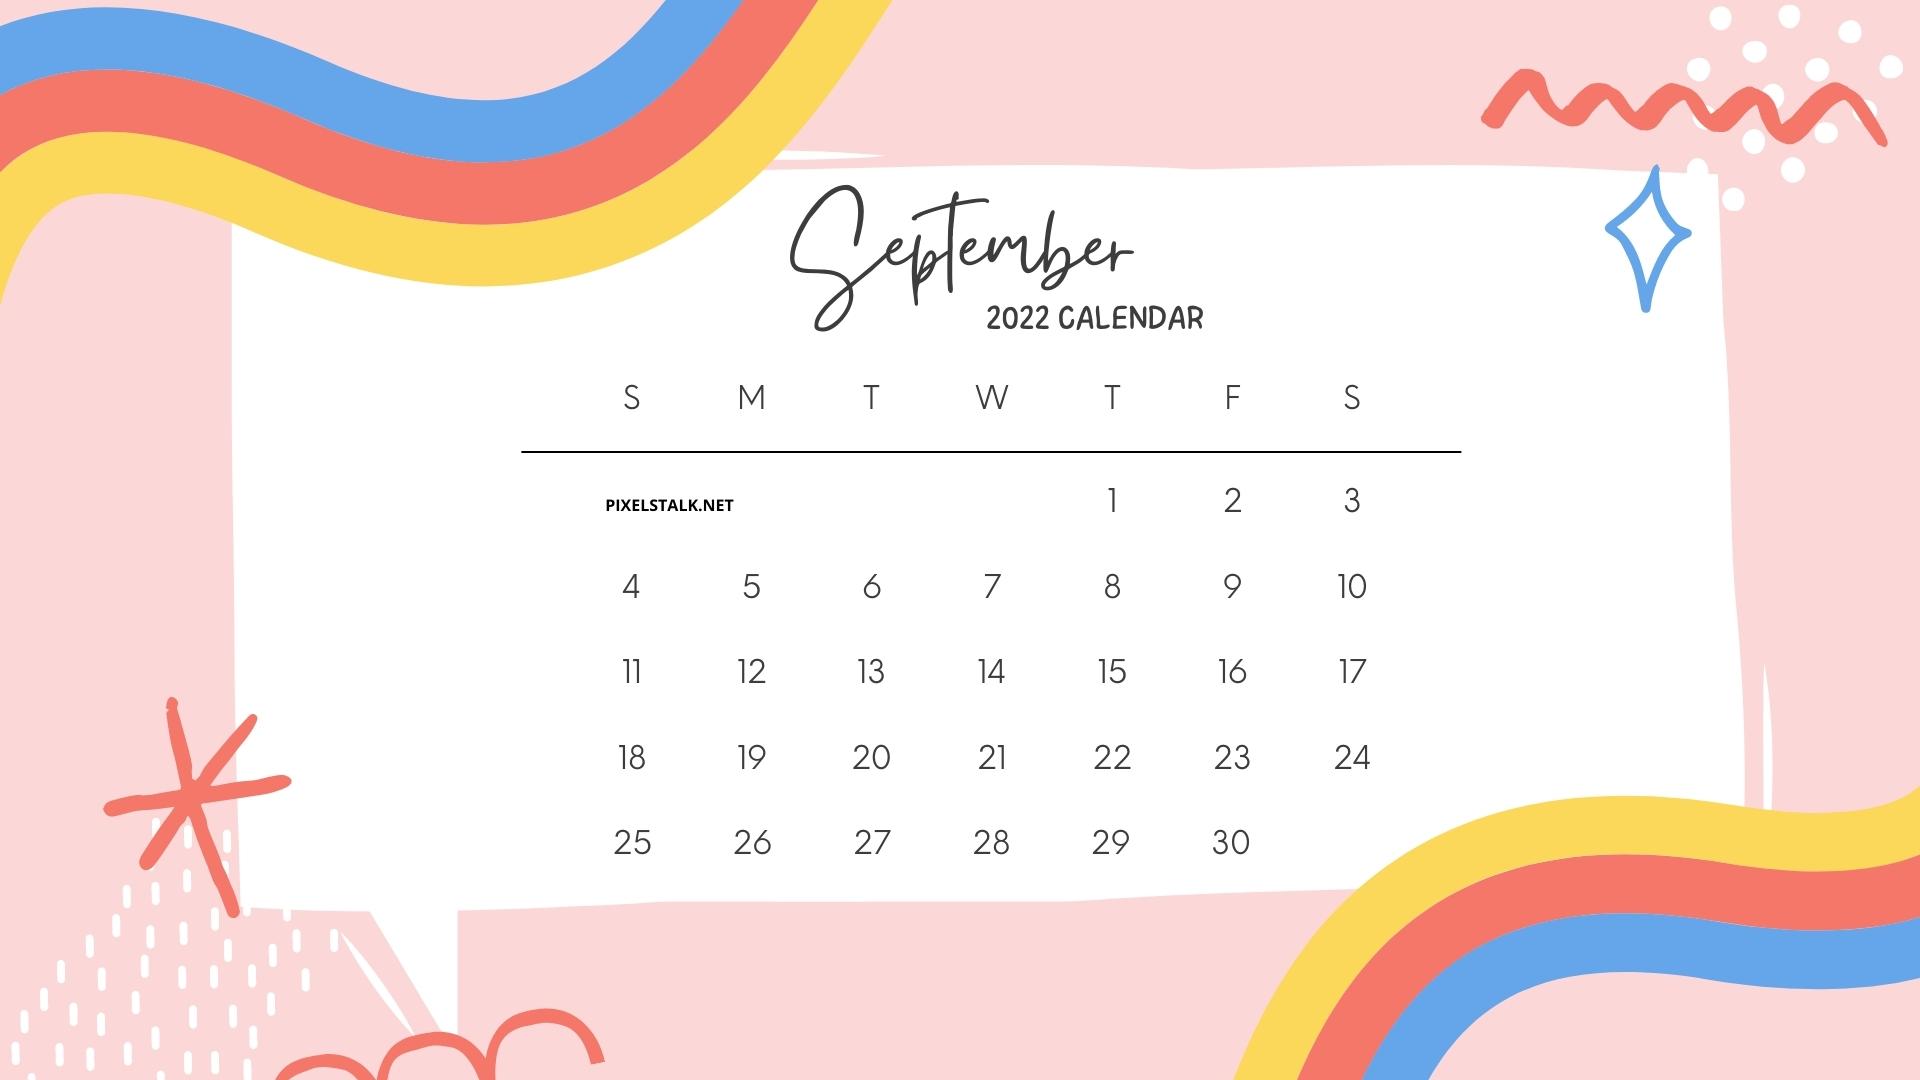 September 2022 Calendar Wallpapers - Wallpaper Cave